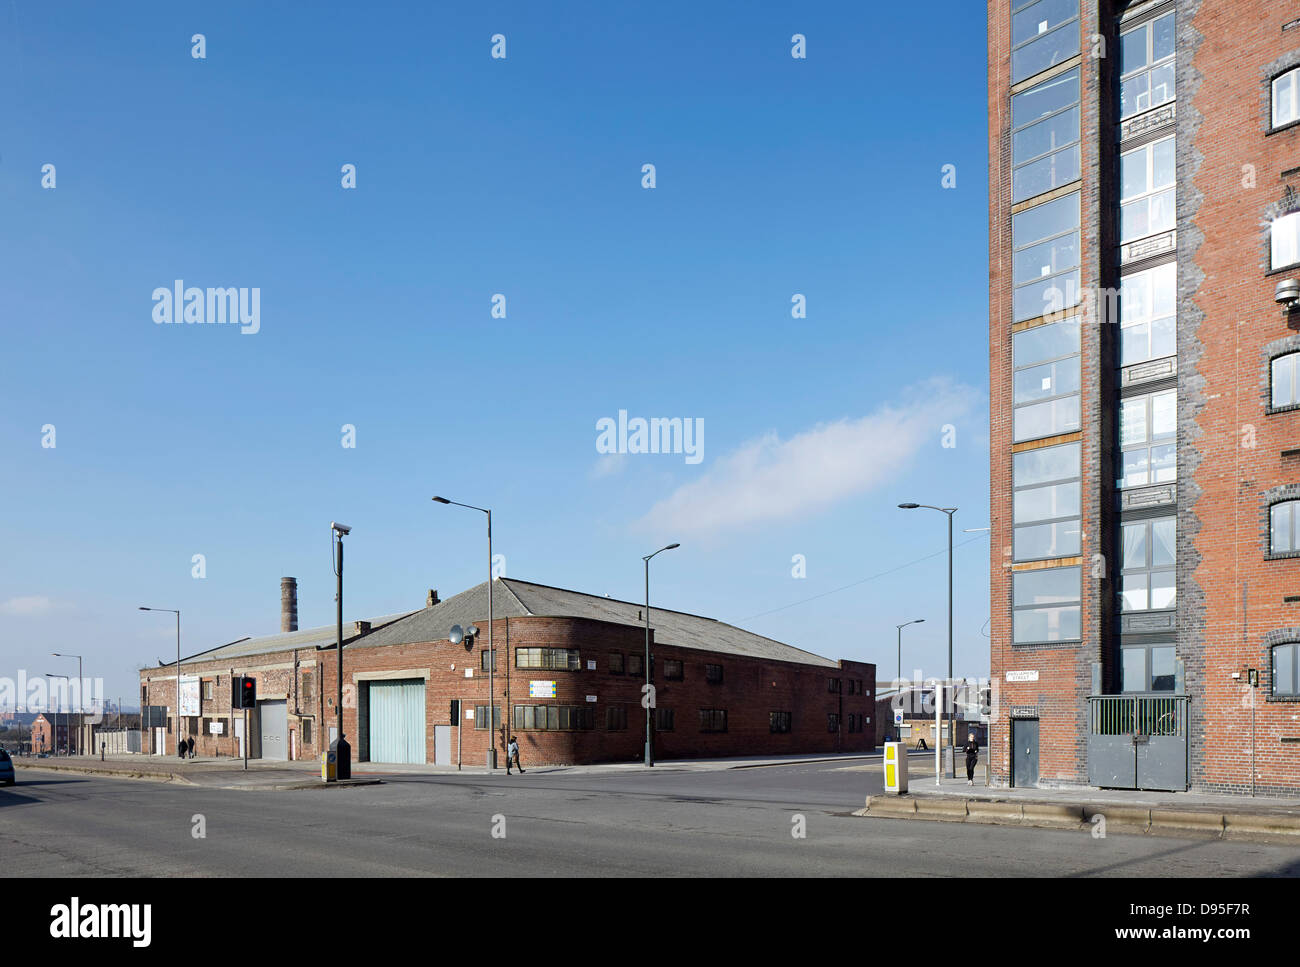 Camp und Ofen, Liverpool, Vereinigtes Königreich. Architekt: FWMA + & lächelnd Wolf, 2012. Straßenansicht der baltischen Dreieck. Stockfoto